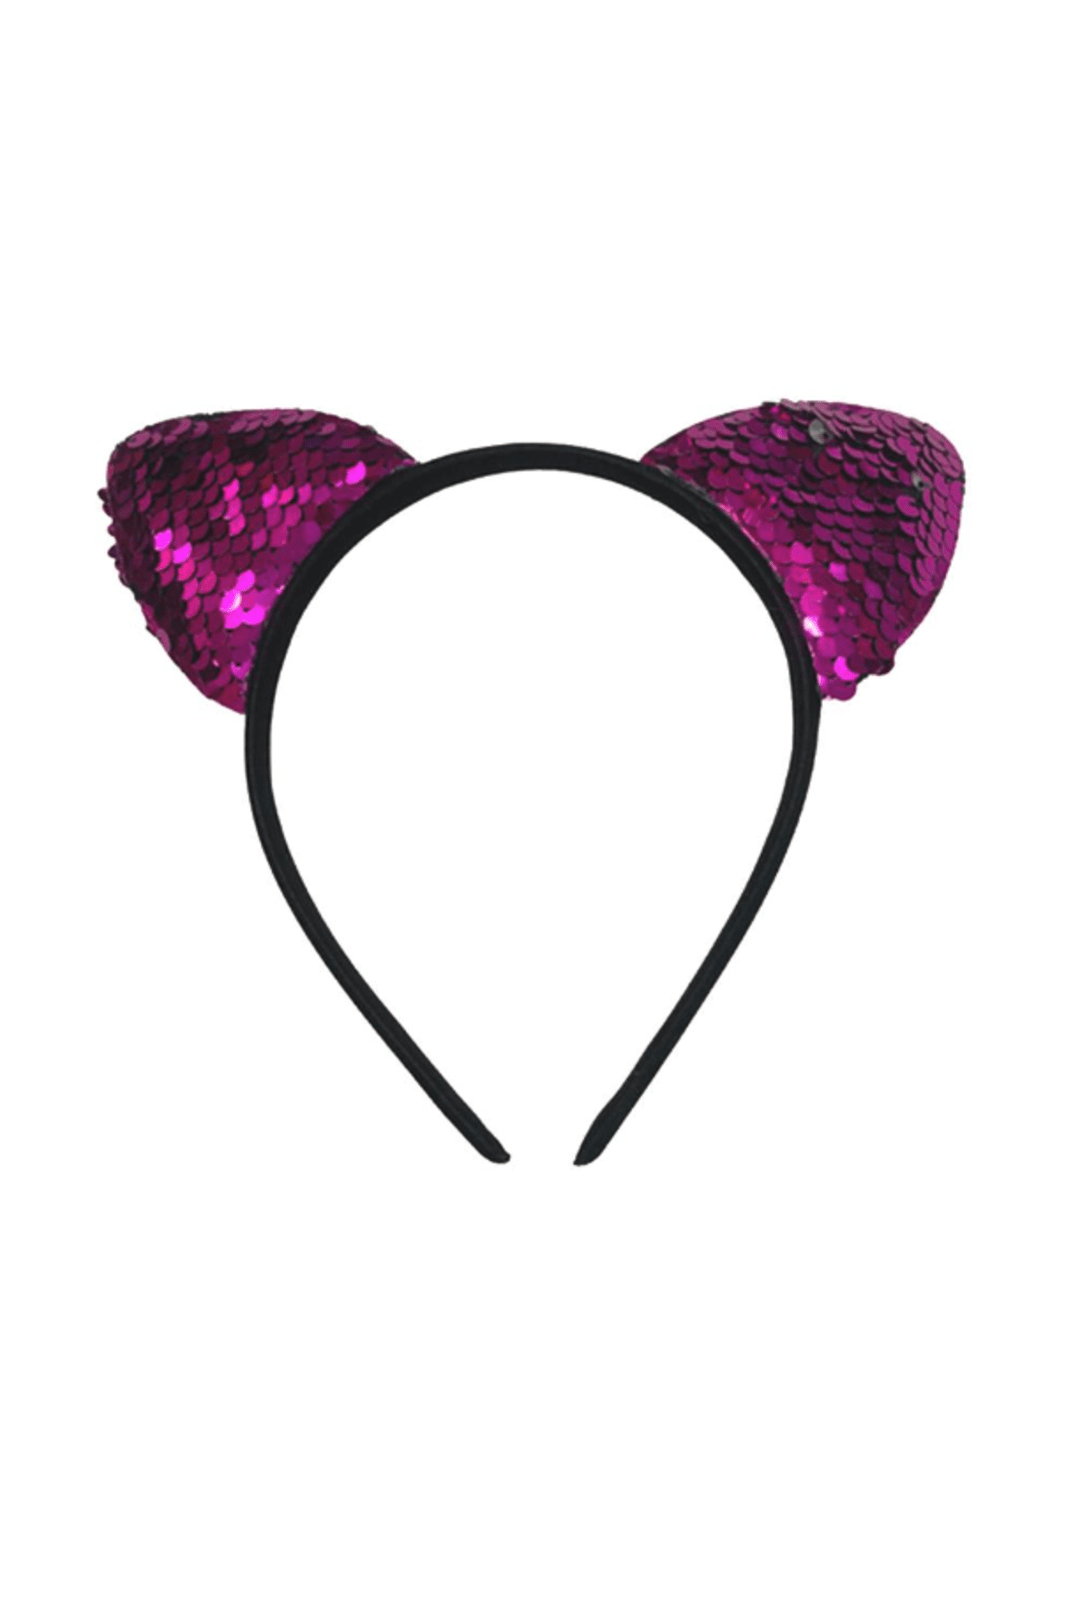 Hot Pink & Black Sequin Cat Ears